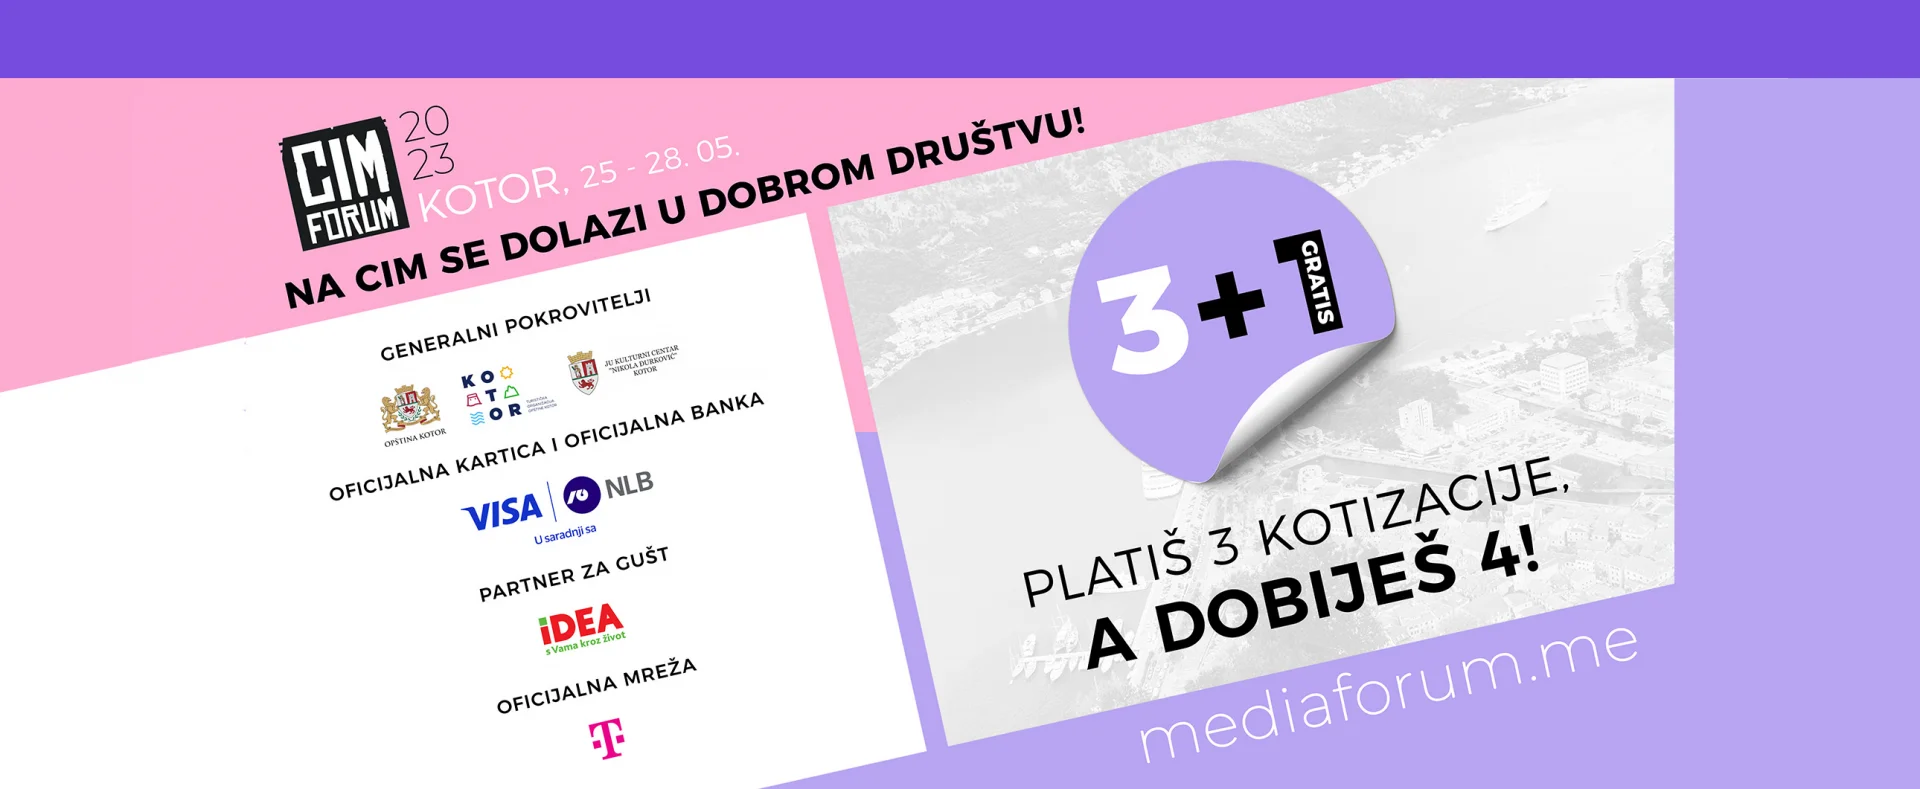 Crnogorski Telekom je zvanična mreža CIM Foruma